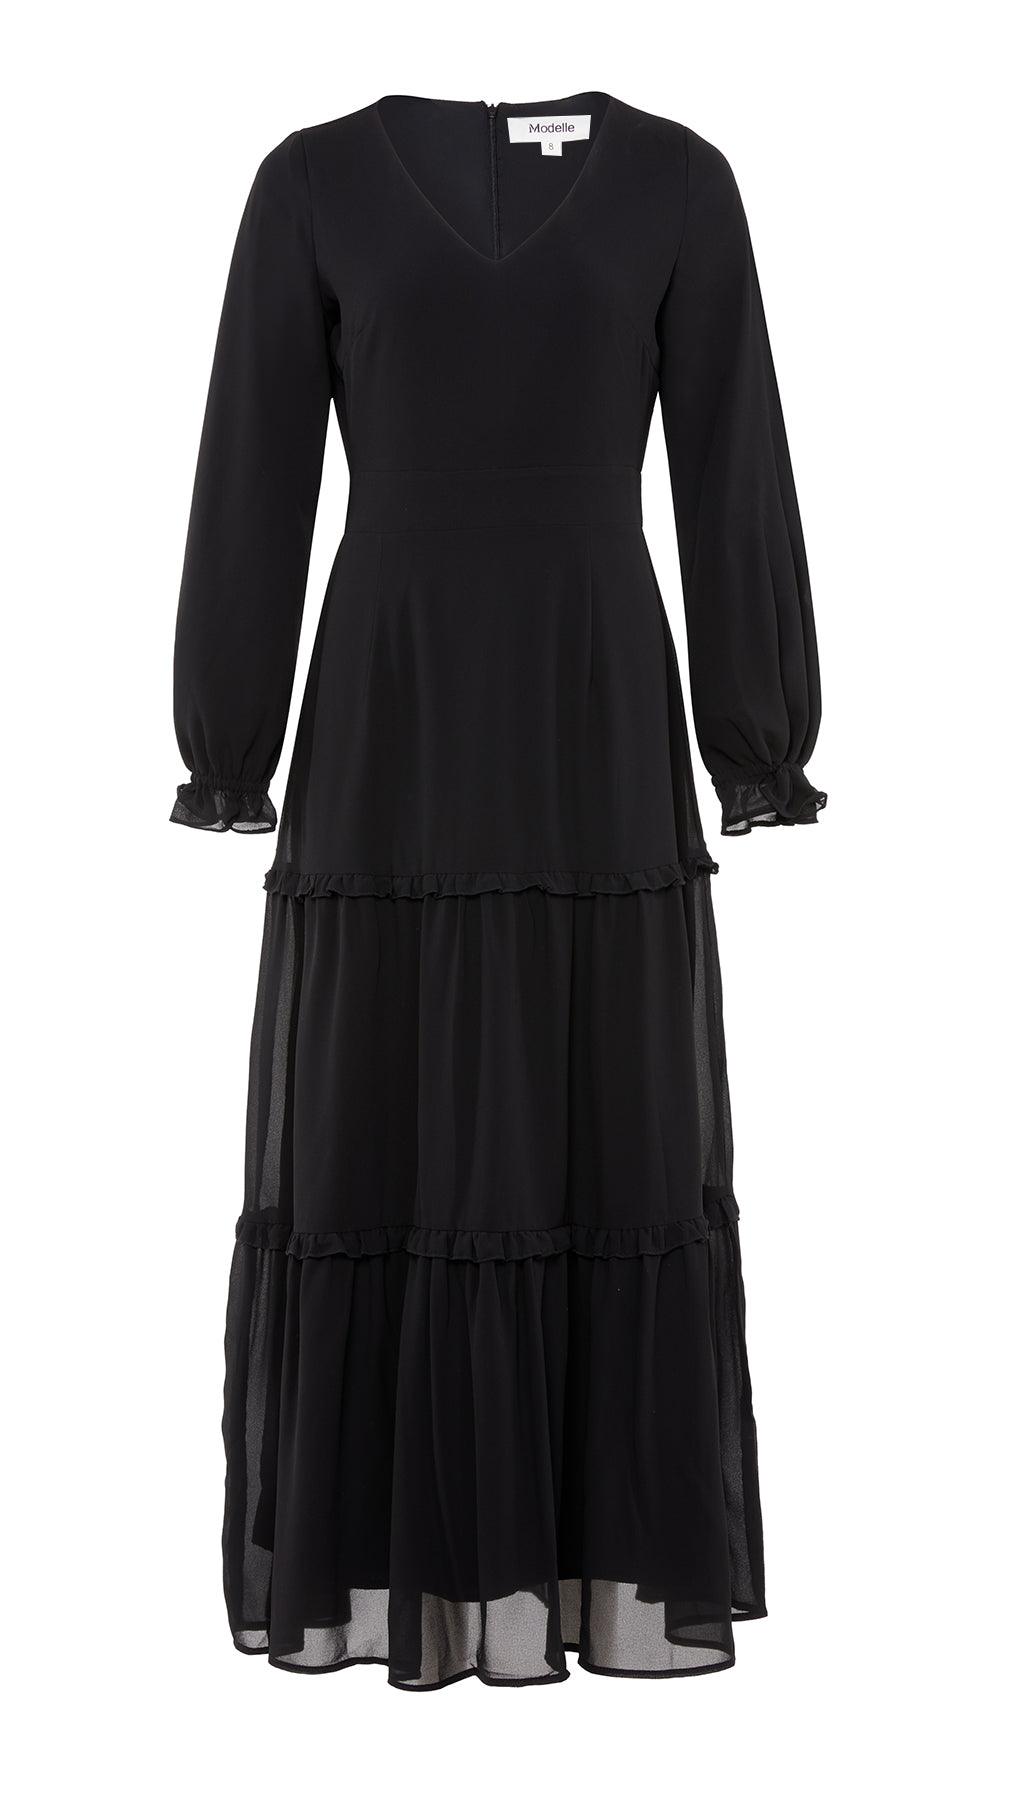 Aviva Long Sleeve Dress -  Modelle